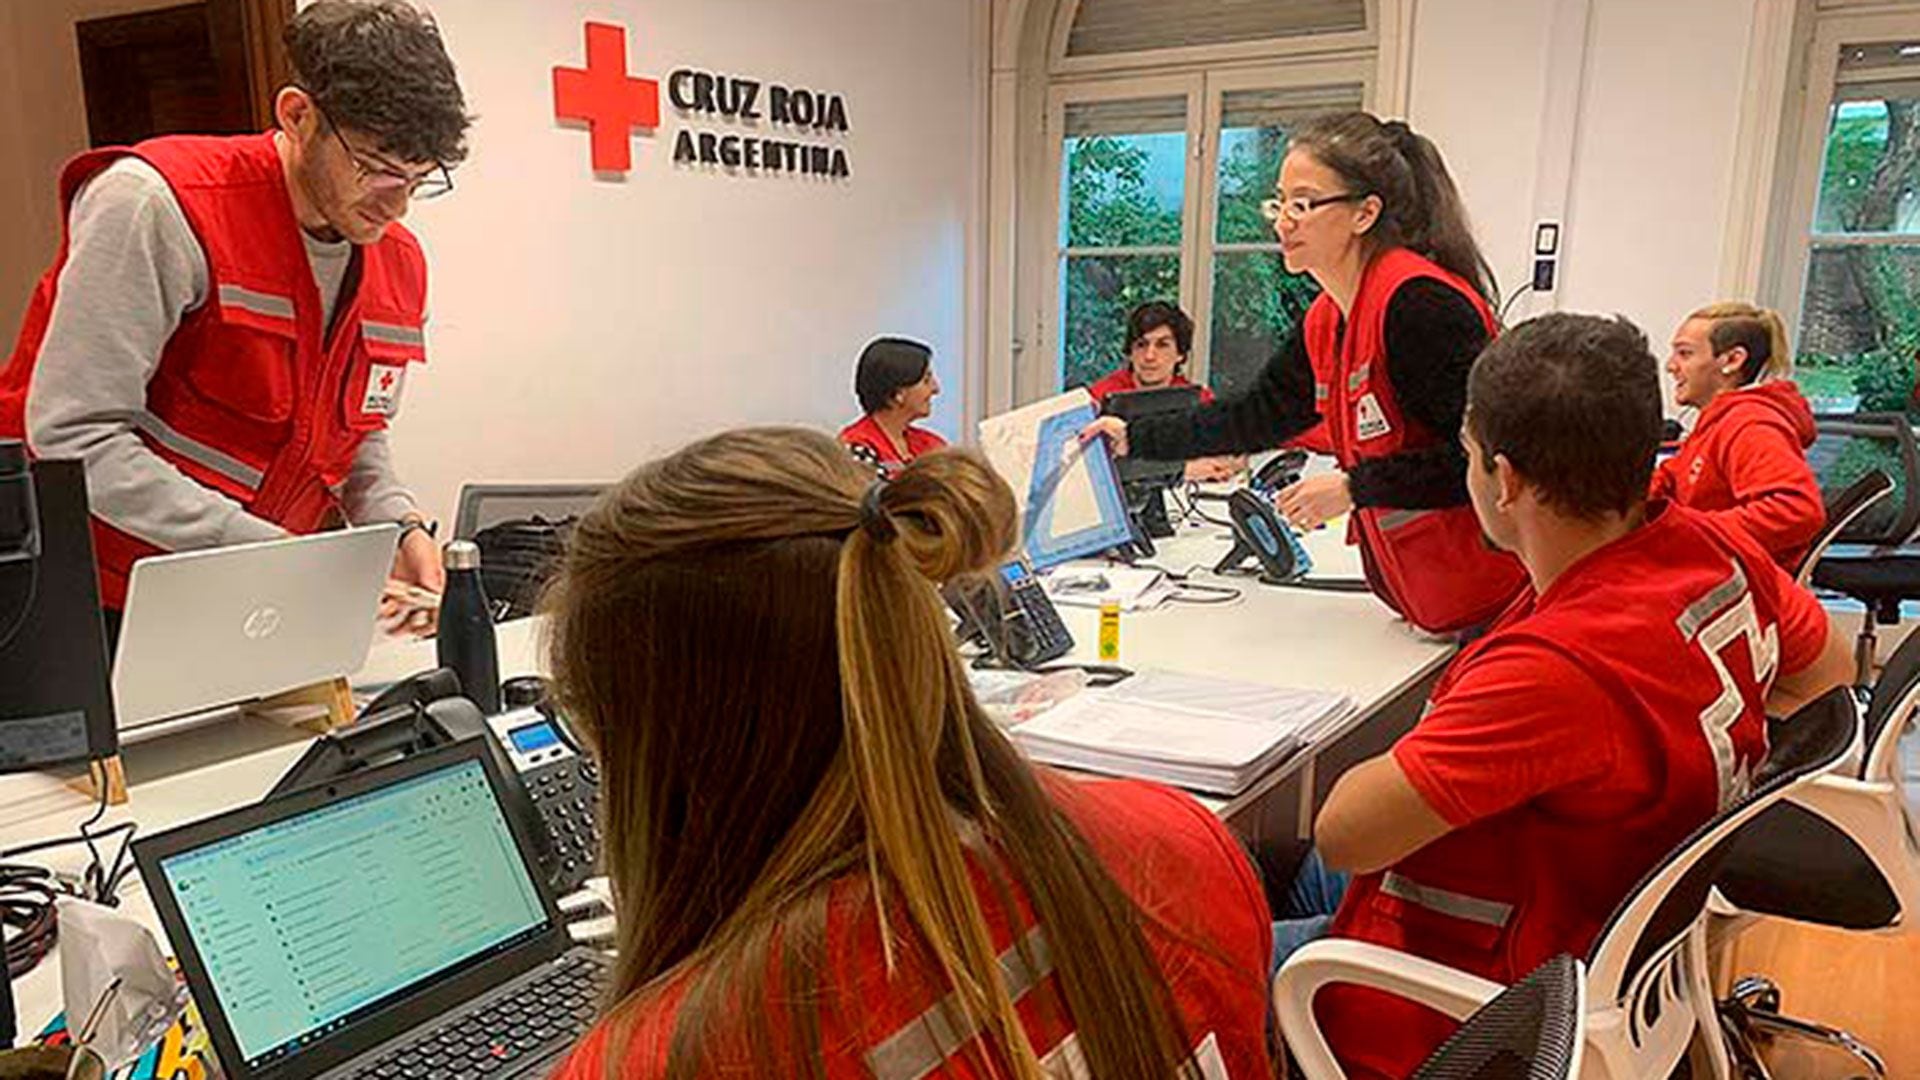 Oficinas de la Cruz Roja Argentina, en pleno trabajo comunitario (Cruz Roja Argentina)